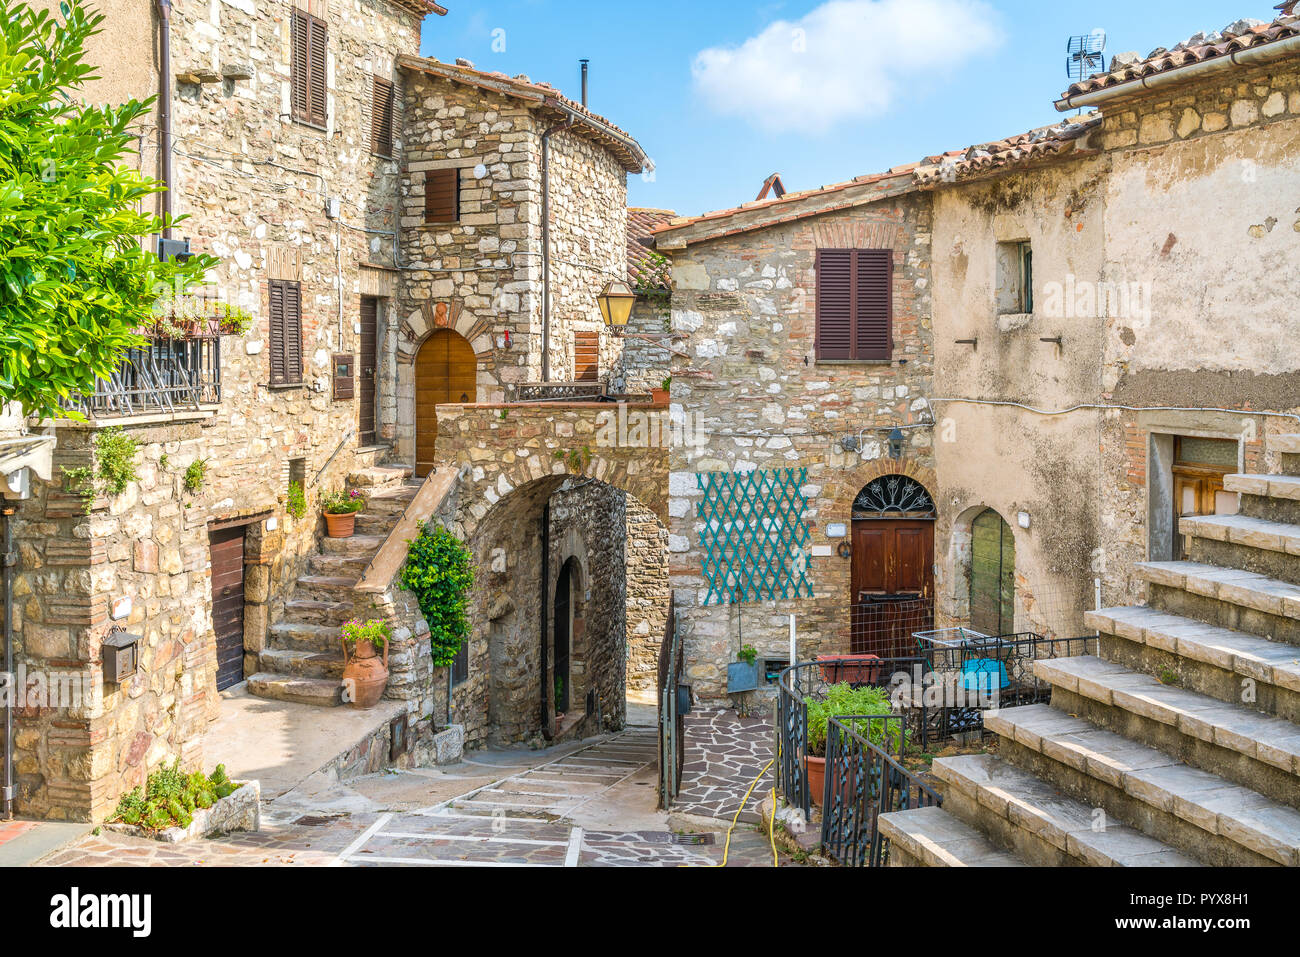 Das idyllische Dorf Melezzole, in der nähe von Montecchio, in der Provinz Terni. Umbrien, Italien. Stockfoto